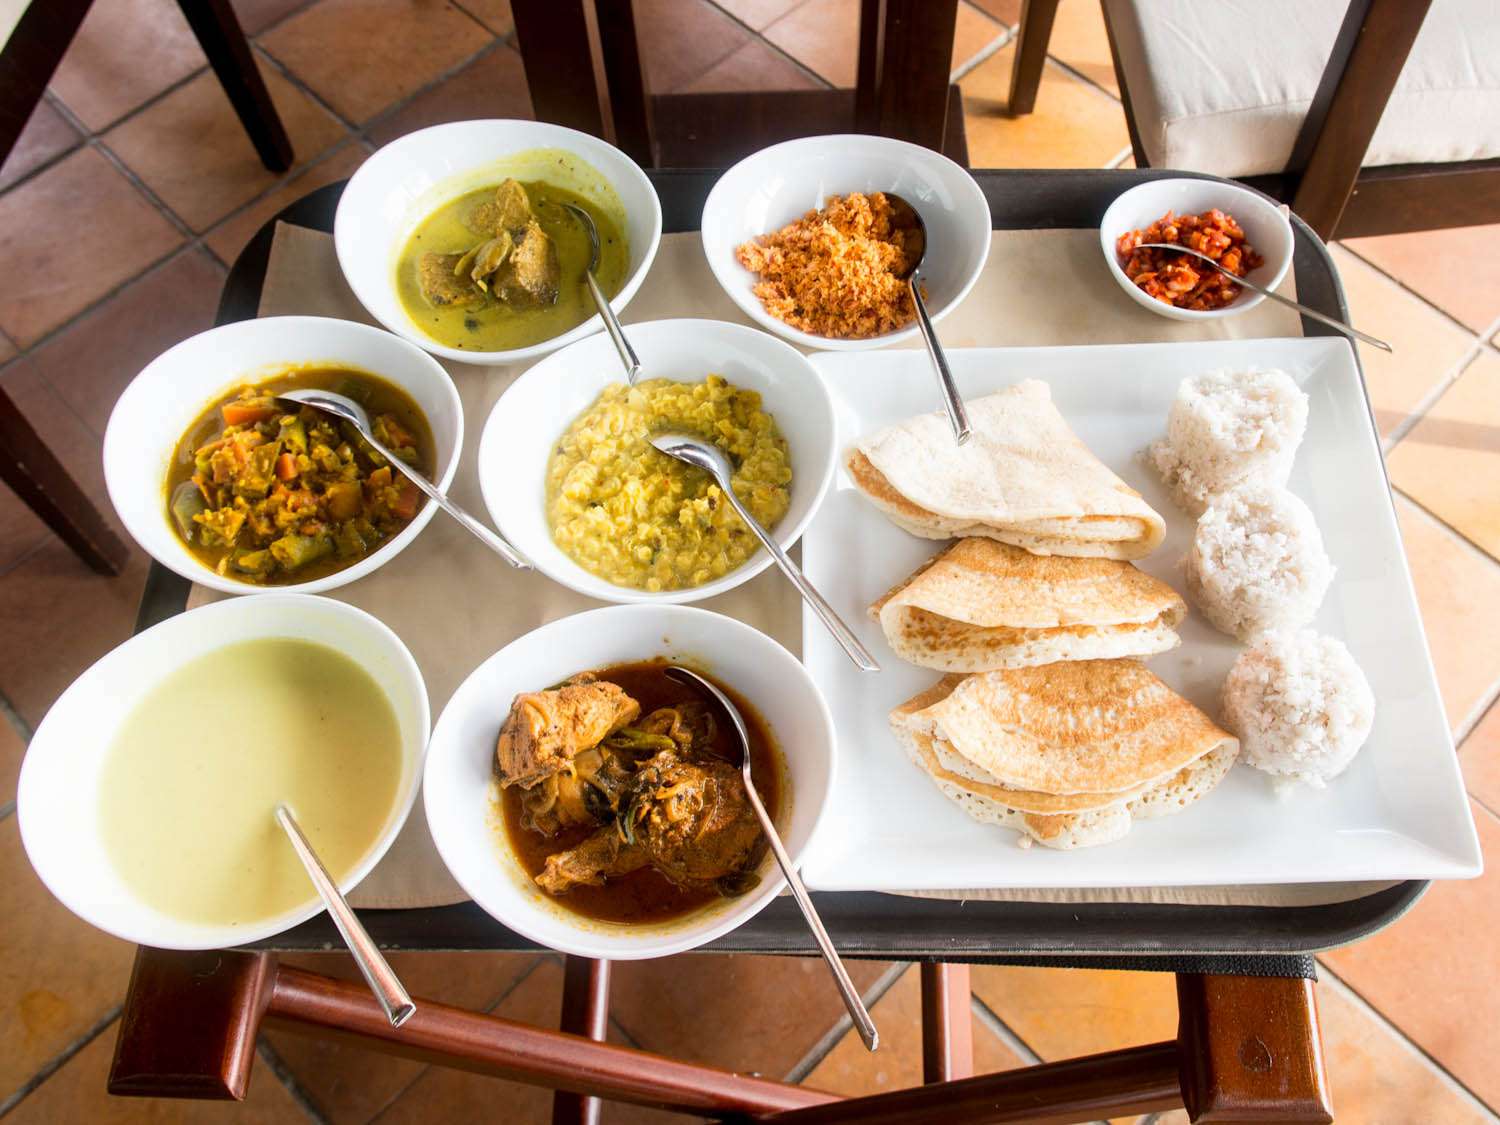 20140802——斯里兰卡,斯里兰卡-食品-咖喱早餐- - - pitthu dosai tomky.jpg——拿俄米